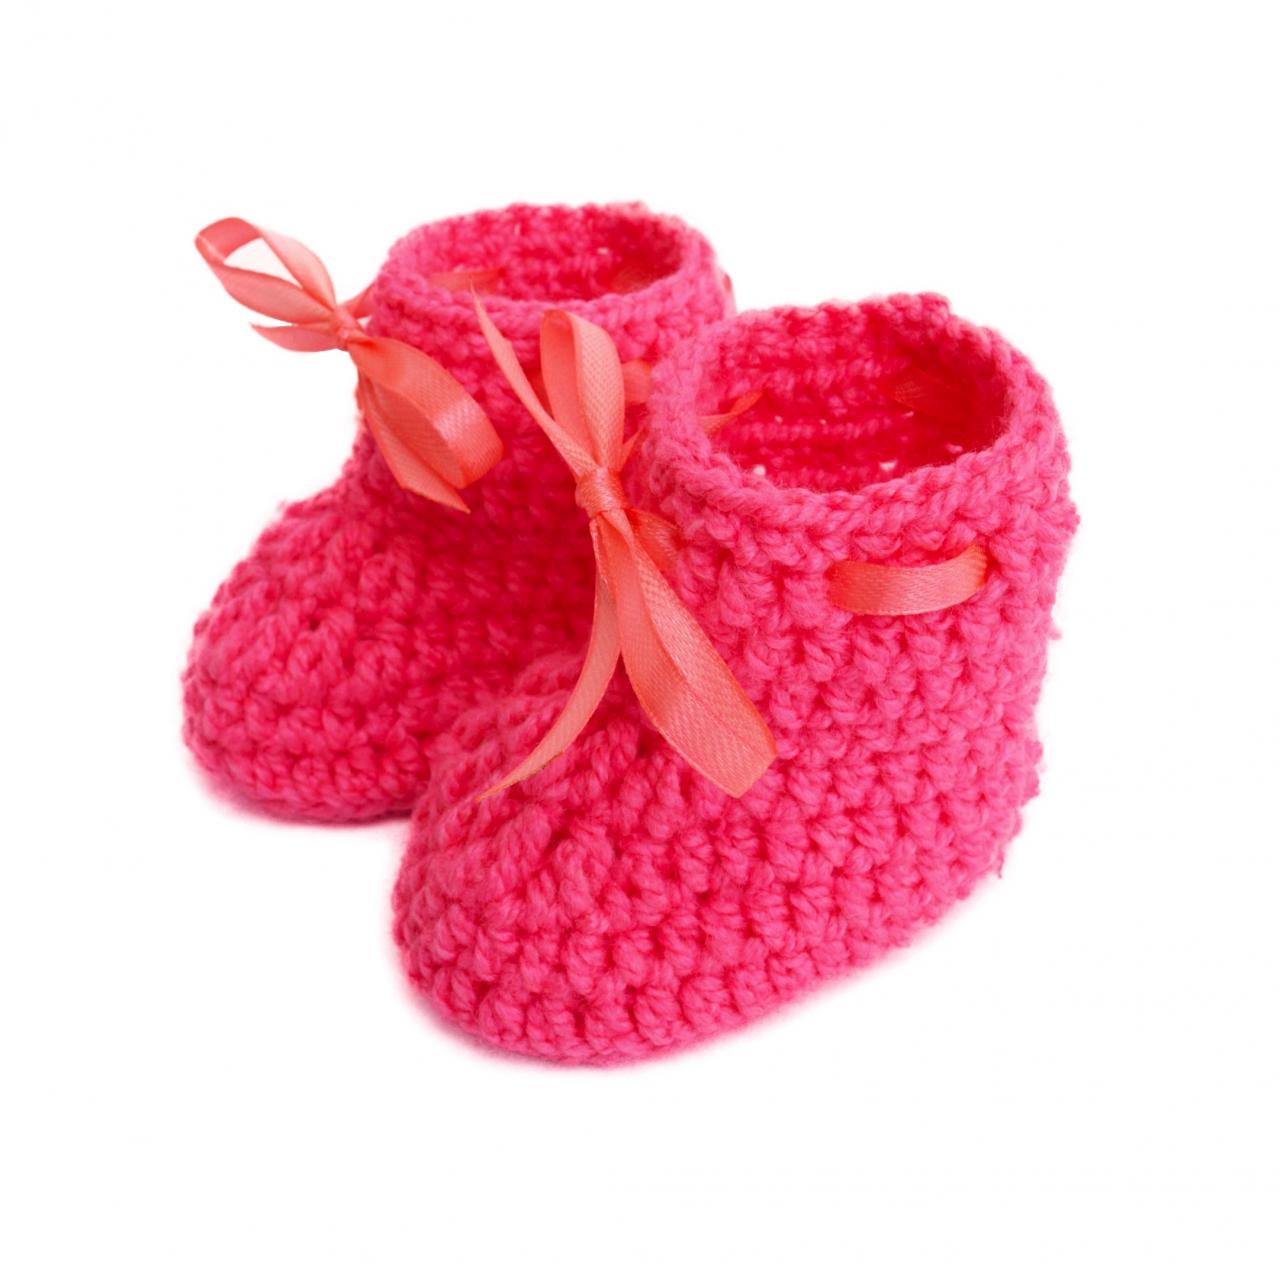 Crochet Baby Booties Woolen Booties, Newborn Infant Booties, Baptism Booties - Pink